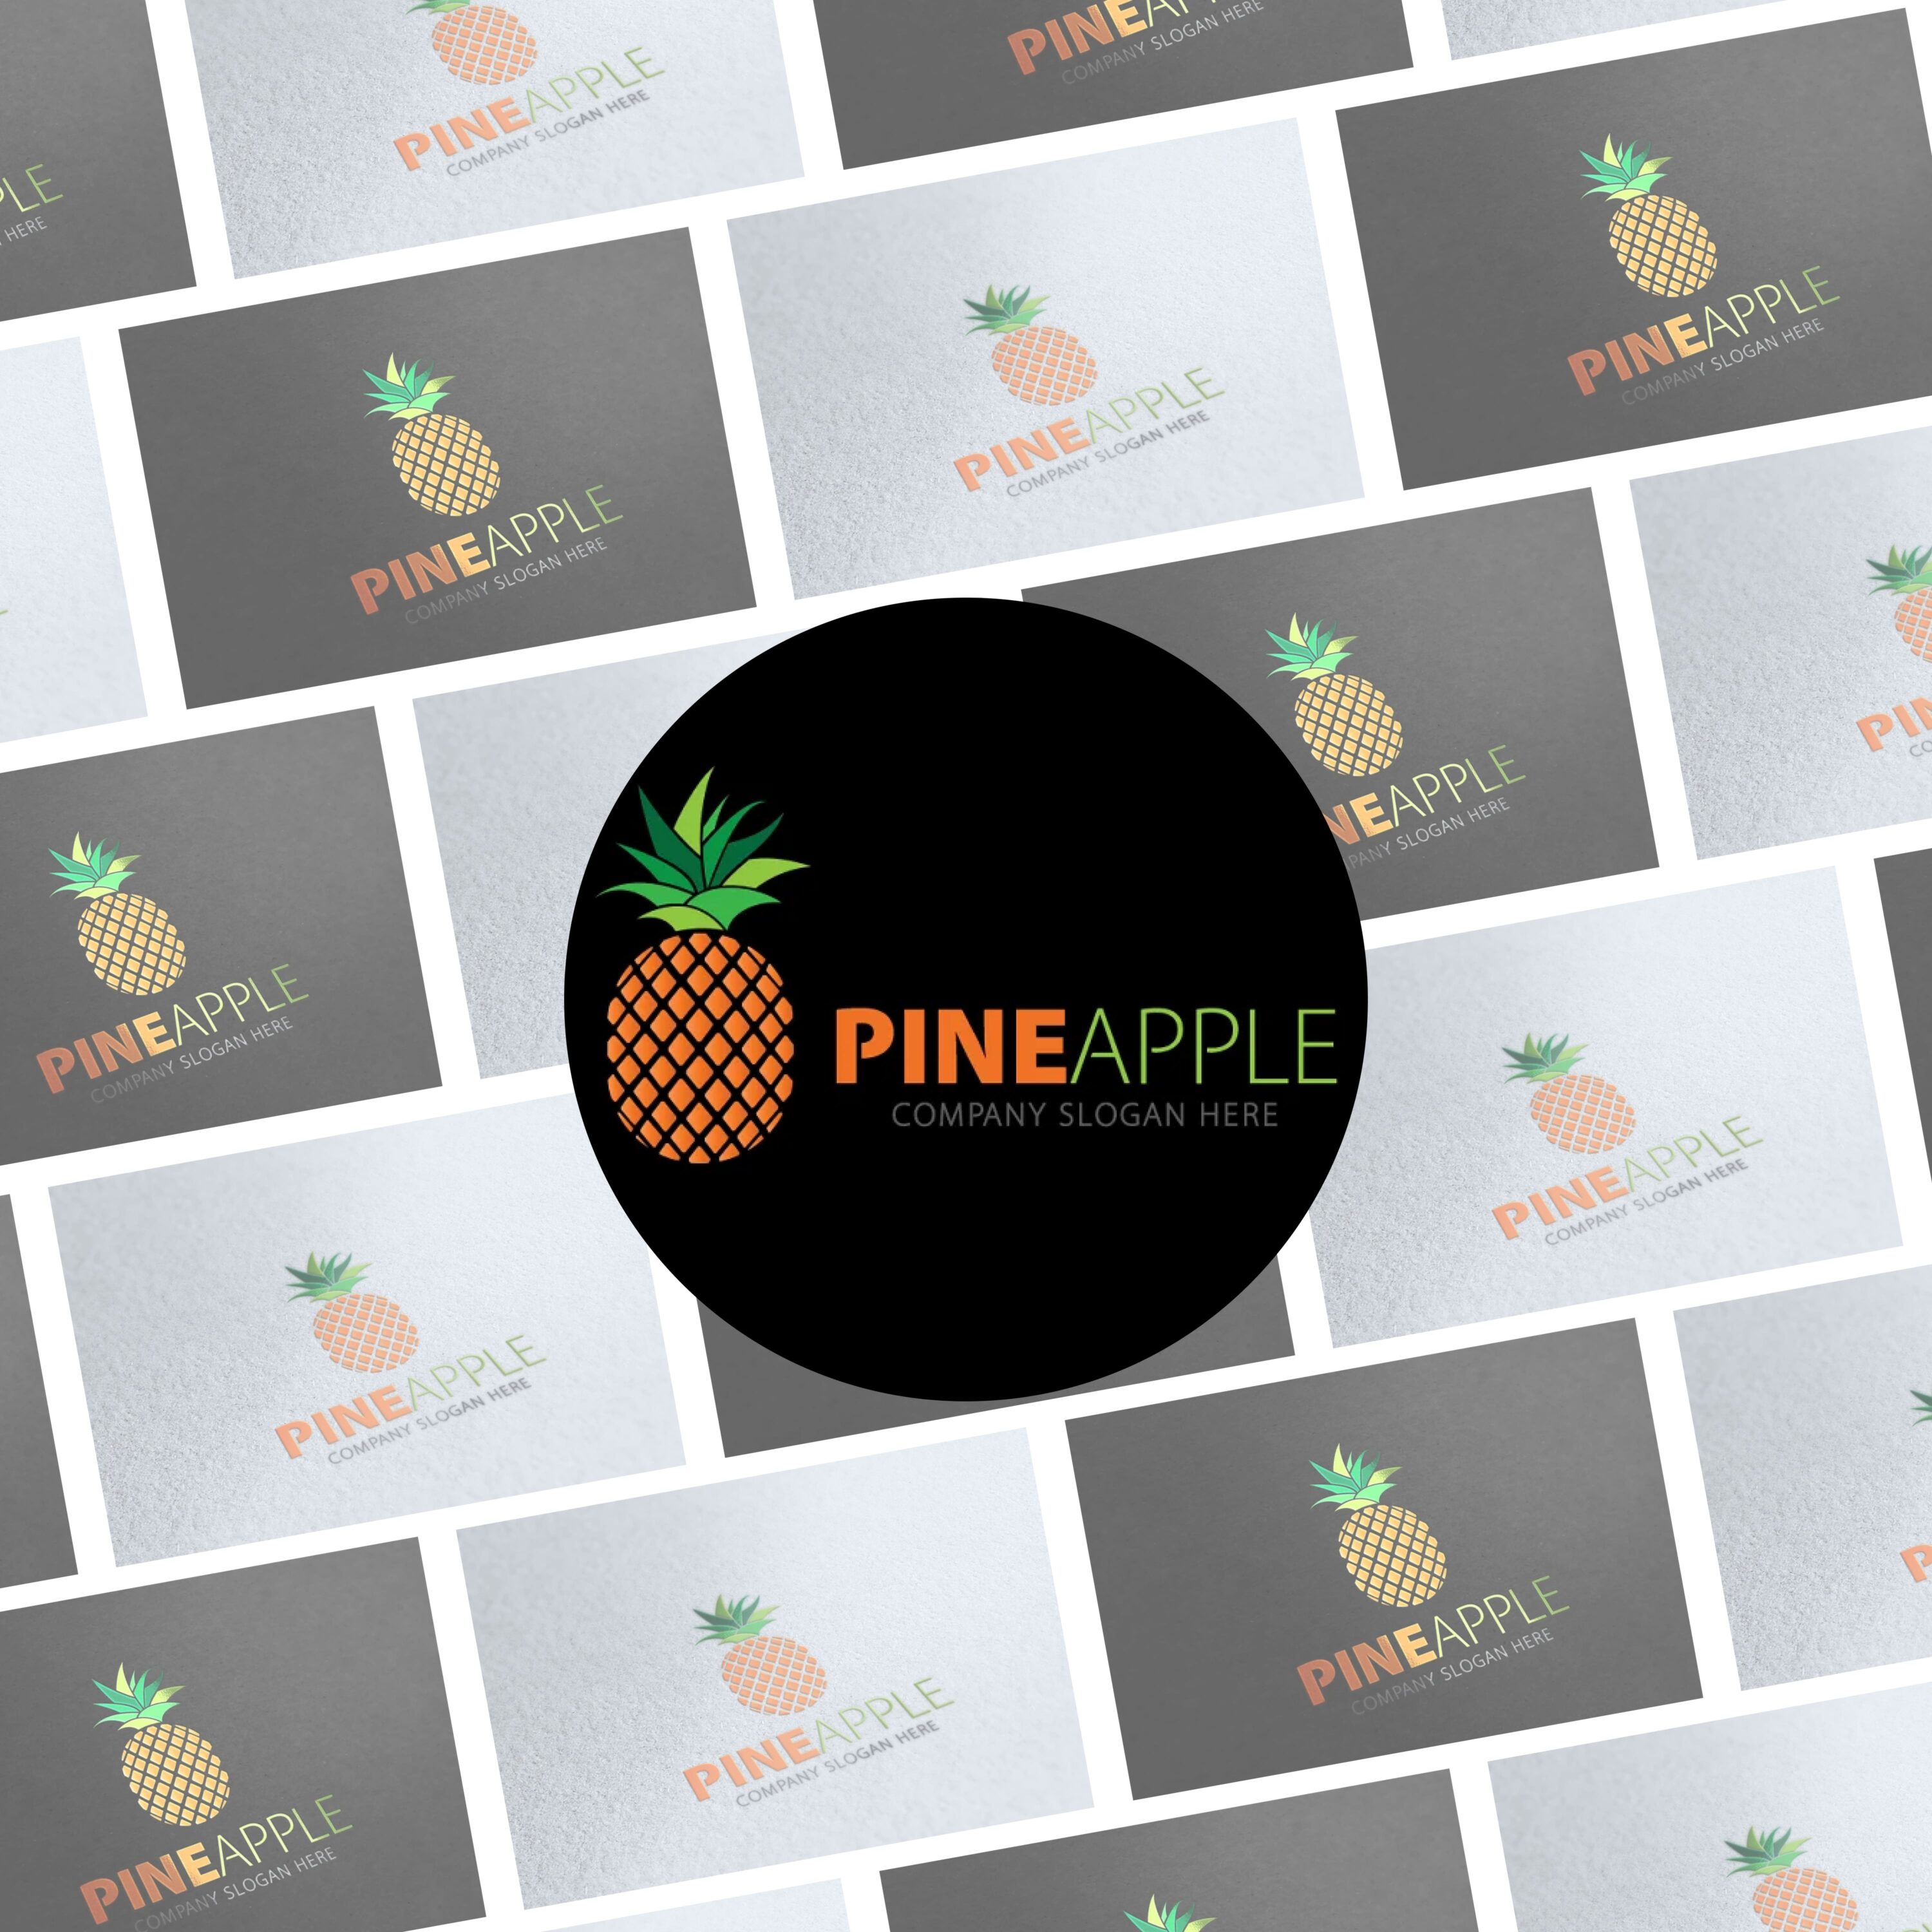 Pineapple Logo cover.